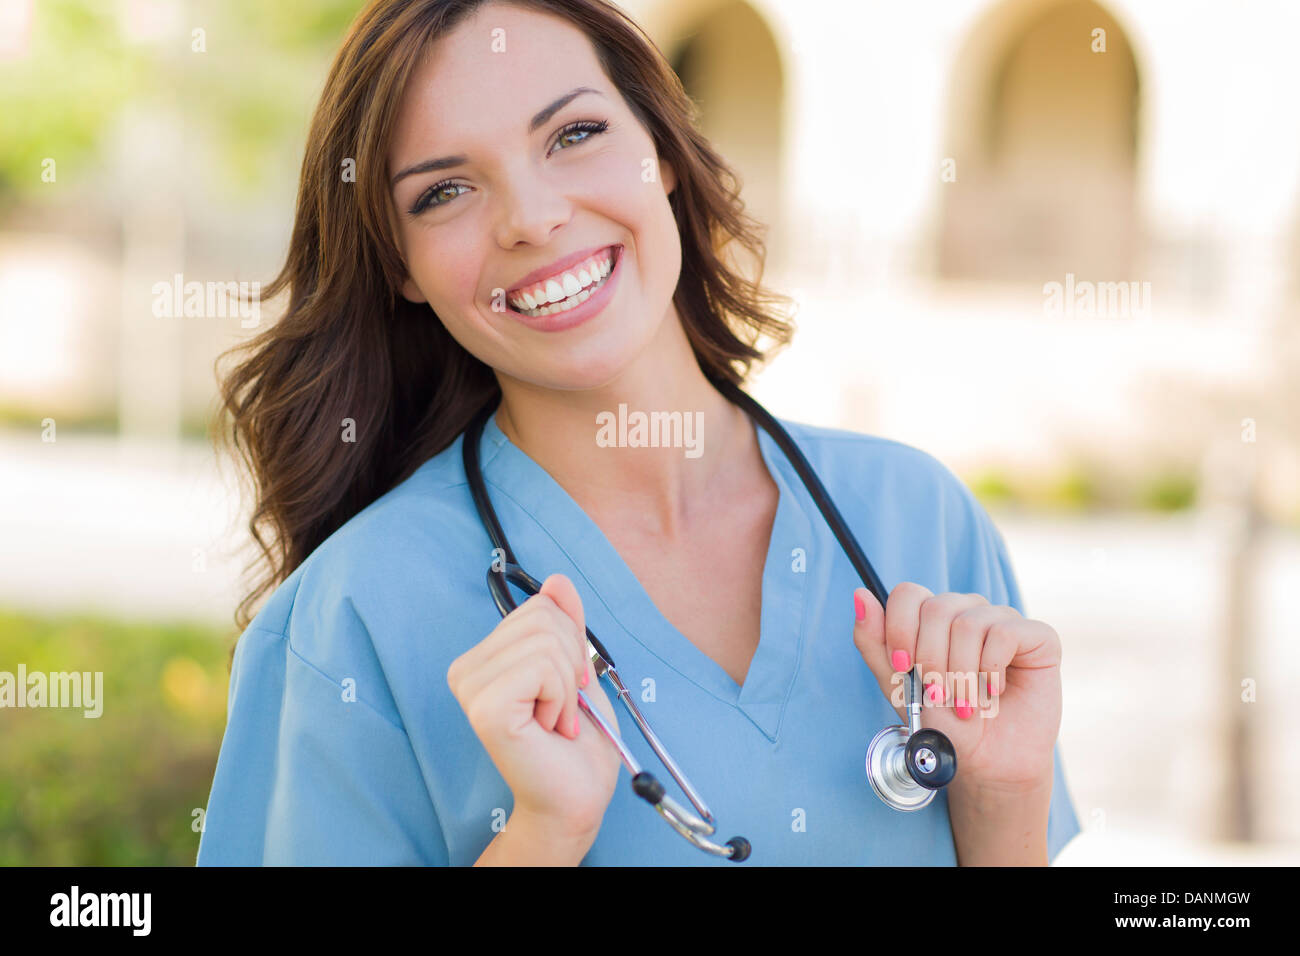 Attraente giovane donna adulta medico o infermiere ritratto all'esterno. Foto Stock